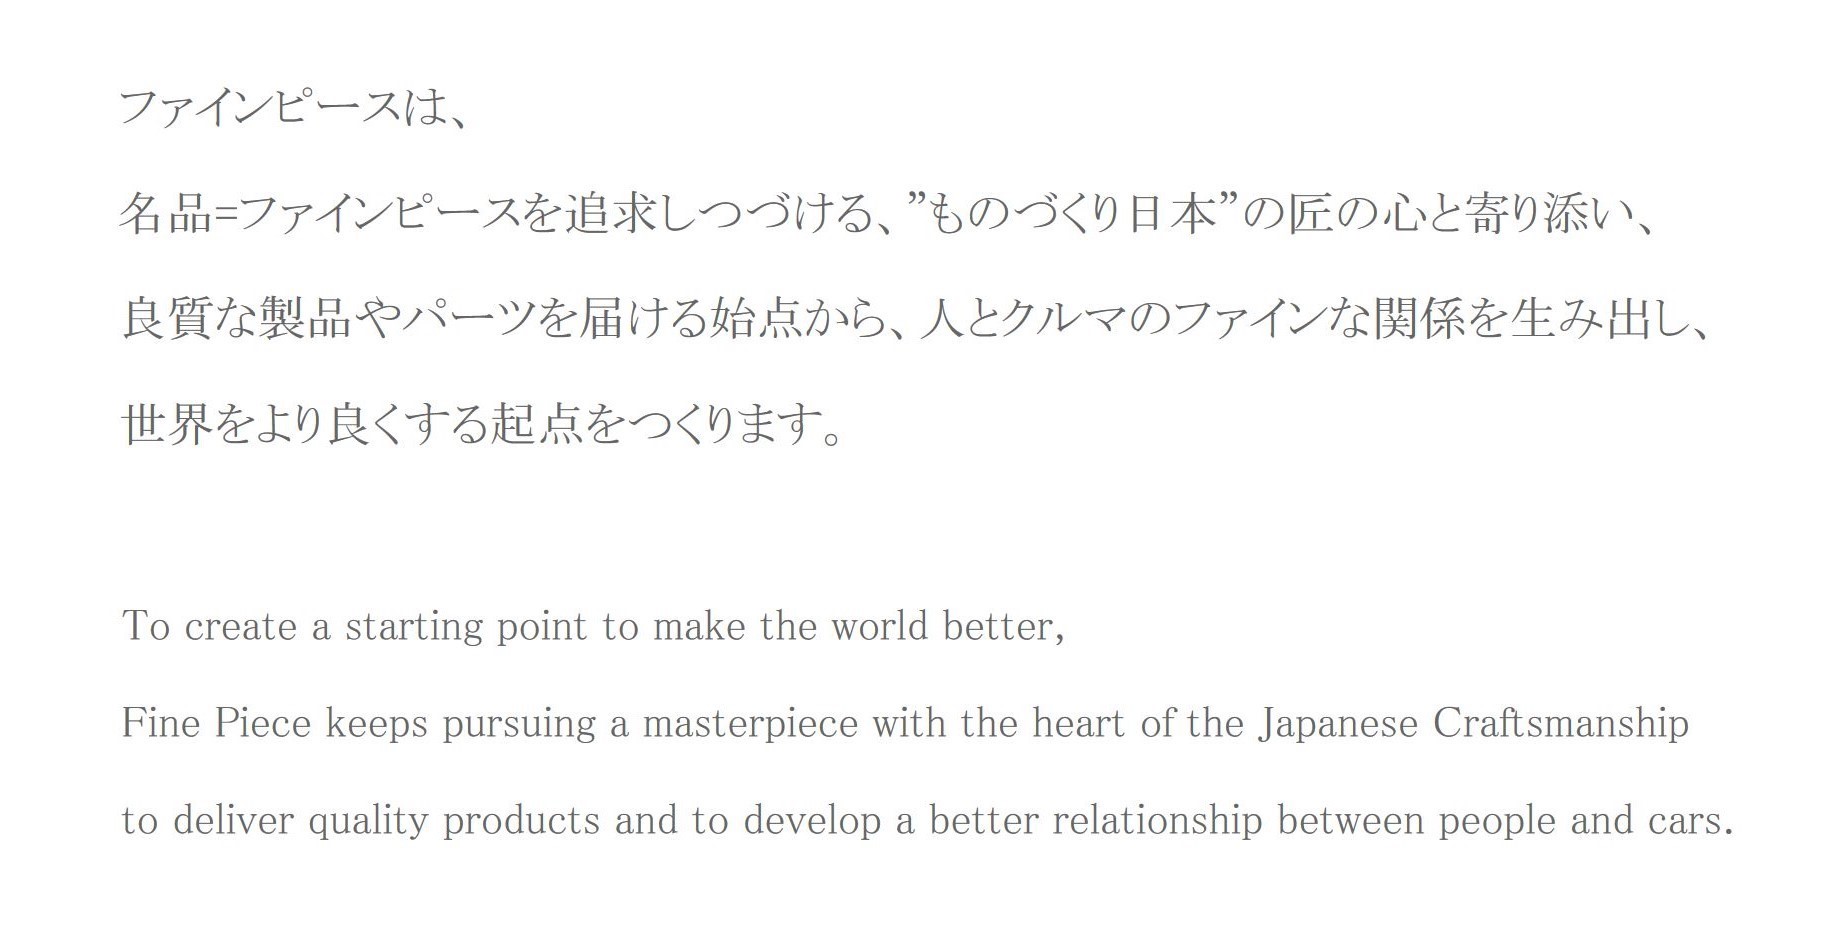 ファインピース: Fine Piece | ファインピースは、名品＝ファインピースを追求しつづける、ものづくり日本の匠の心と寄り添い...